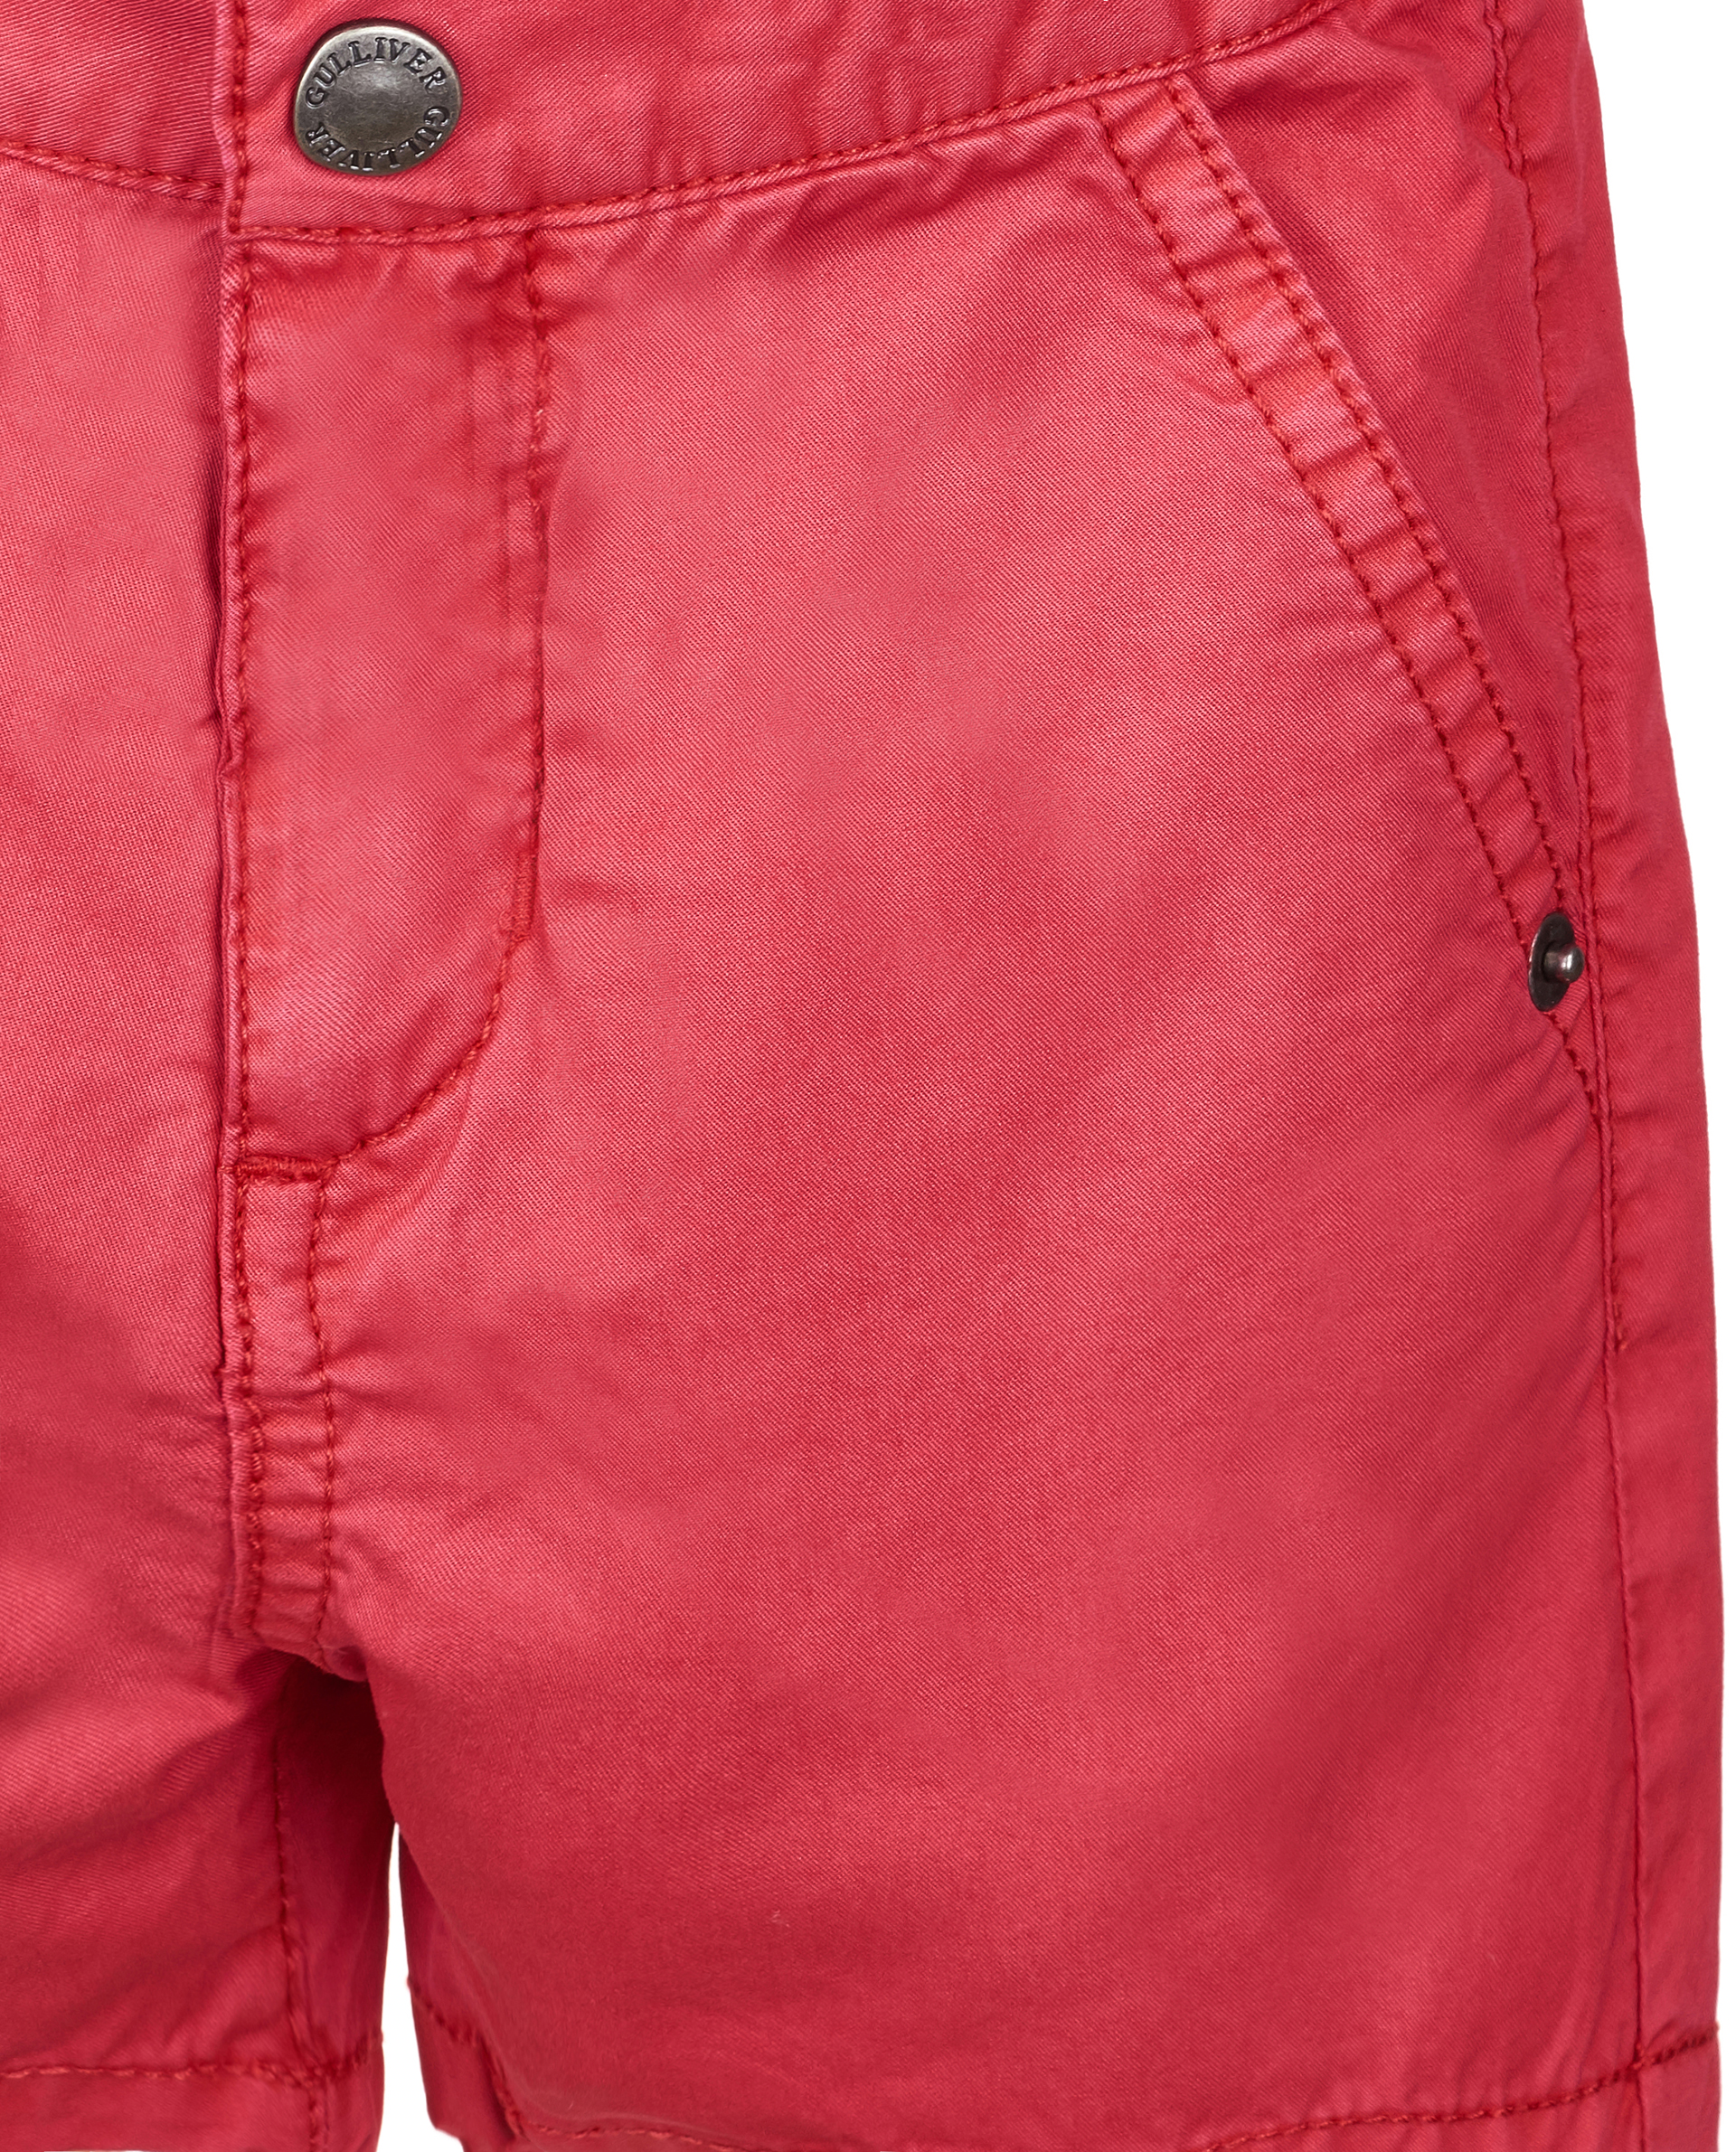 Красные шорты Gulliver 11934BBC6001, размер 86, цвет красный - фото 3